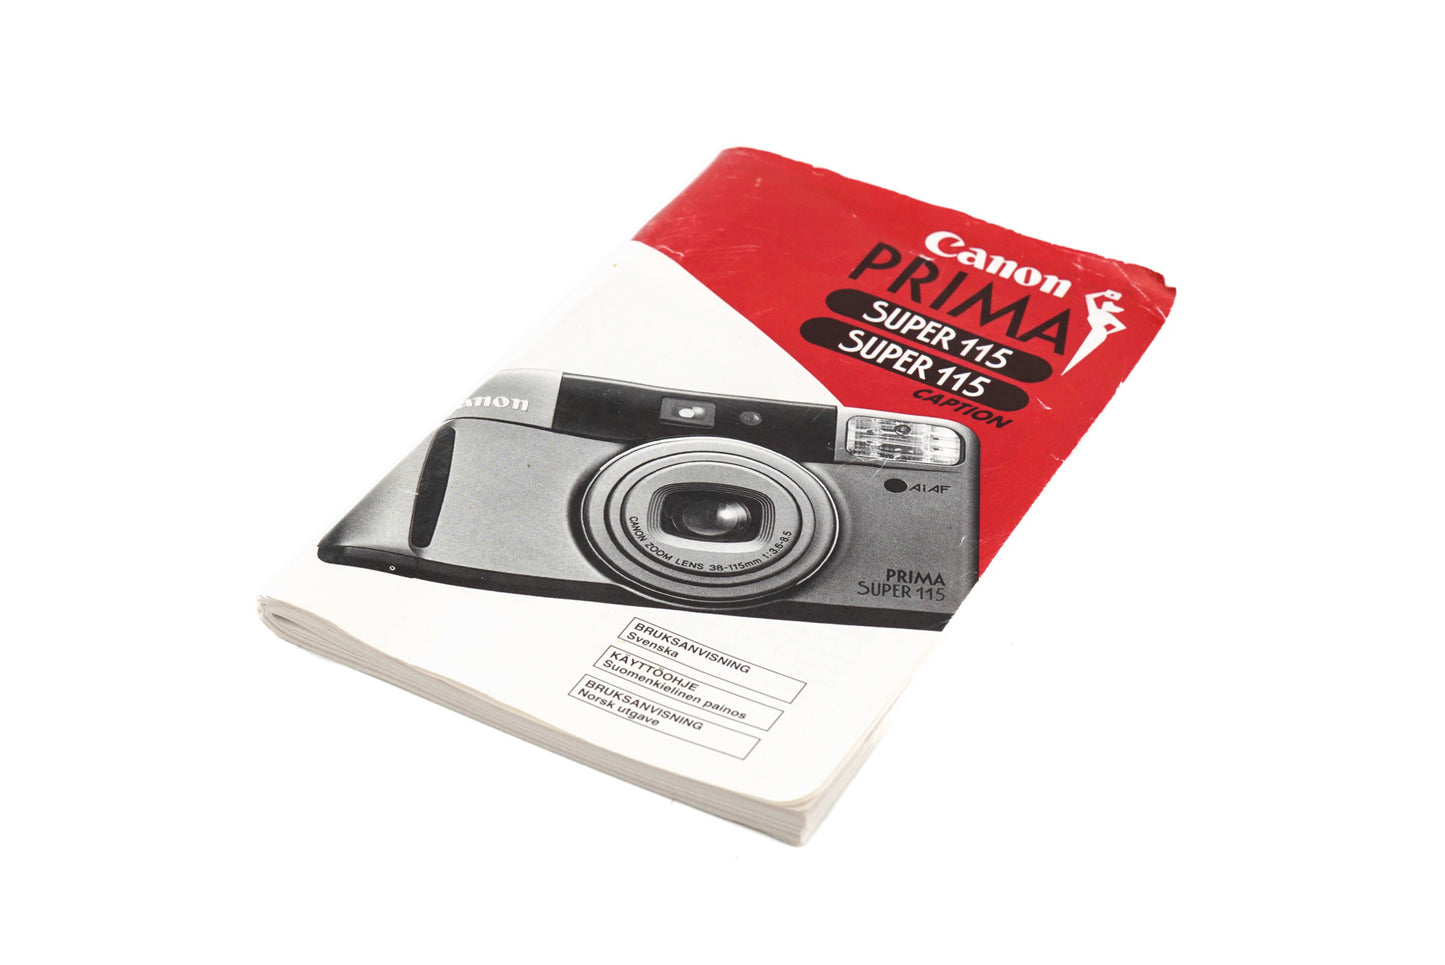 Canon Prima Super 115 Instructions